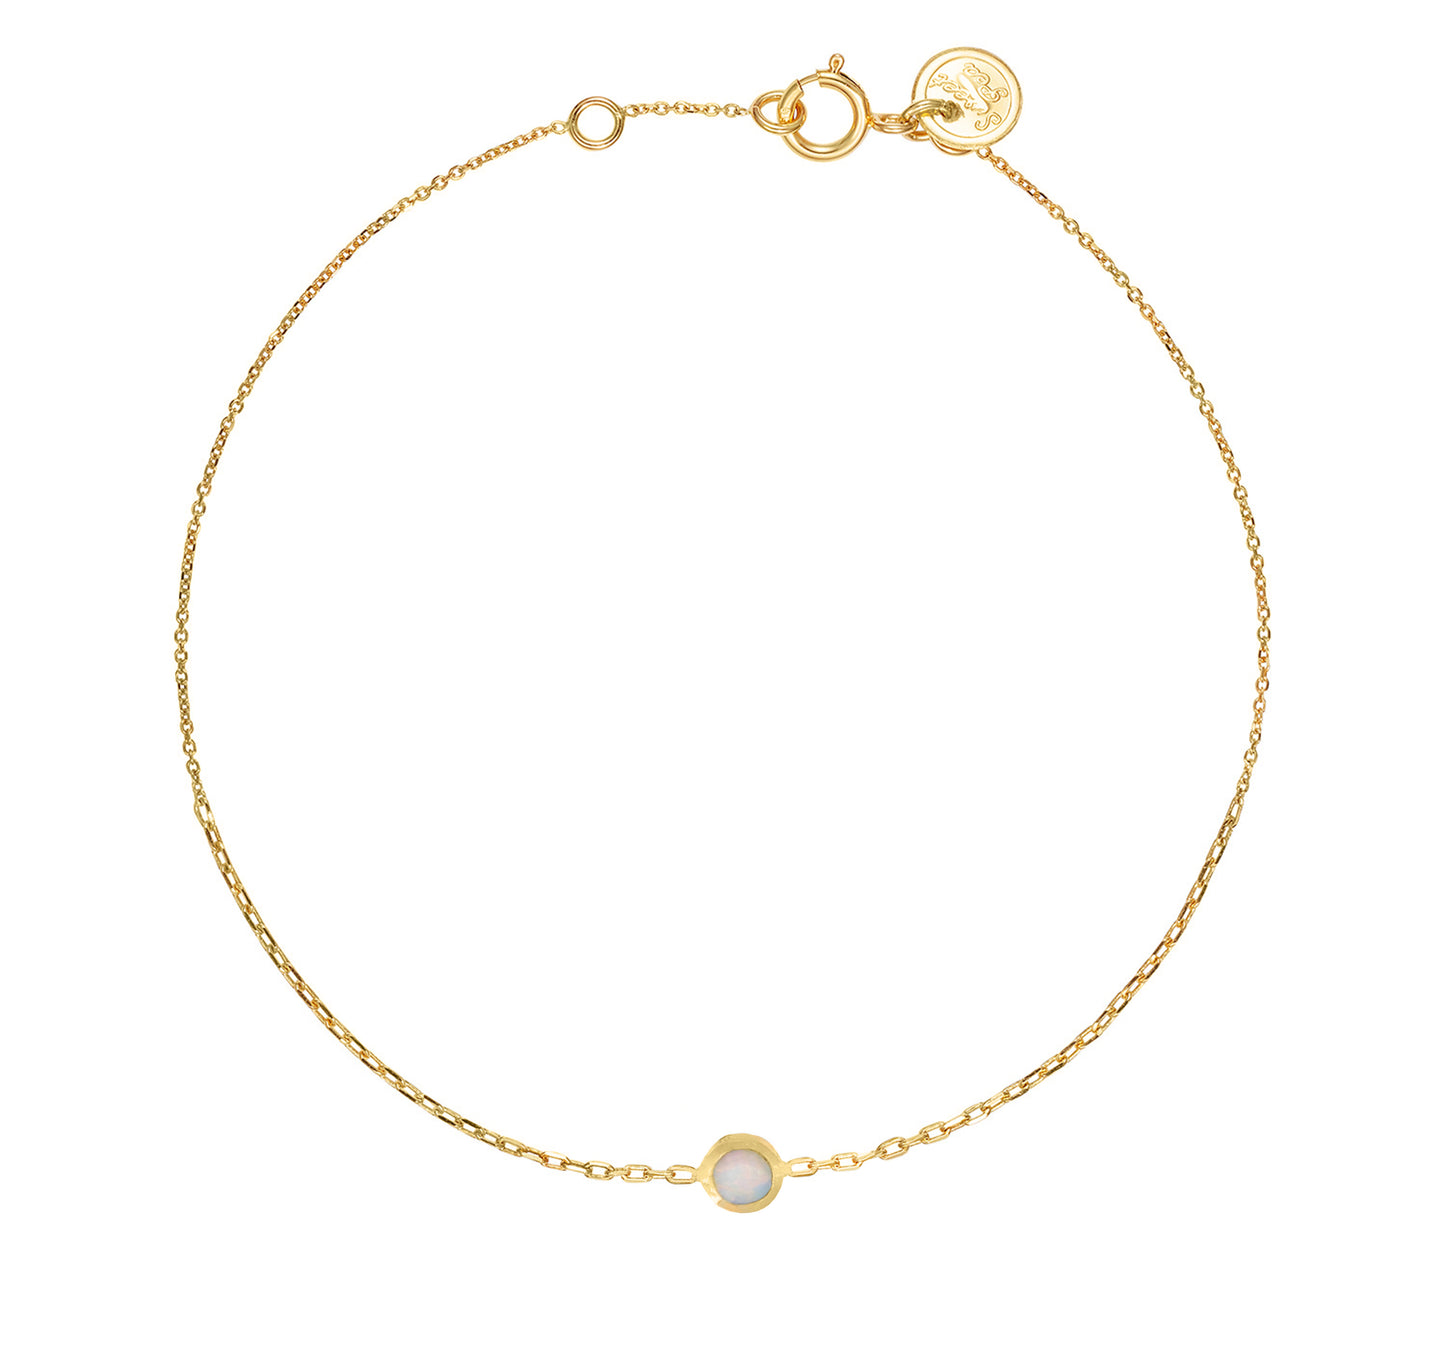 Opal gold chain bracelet